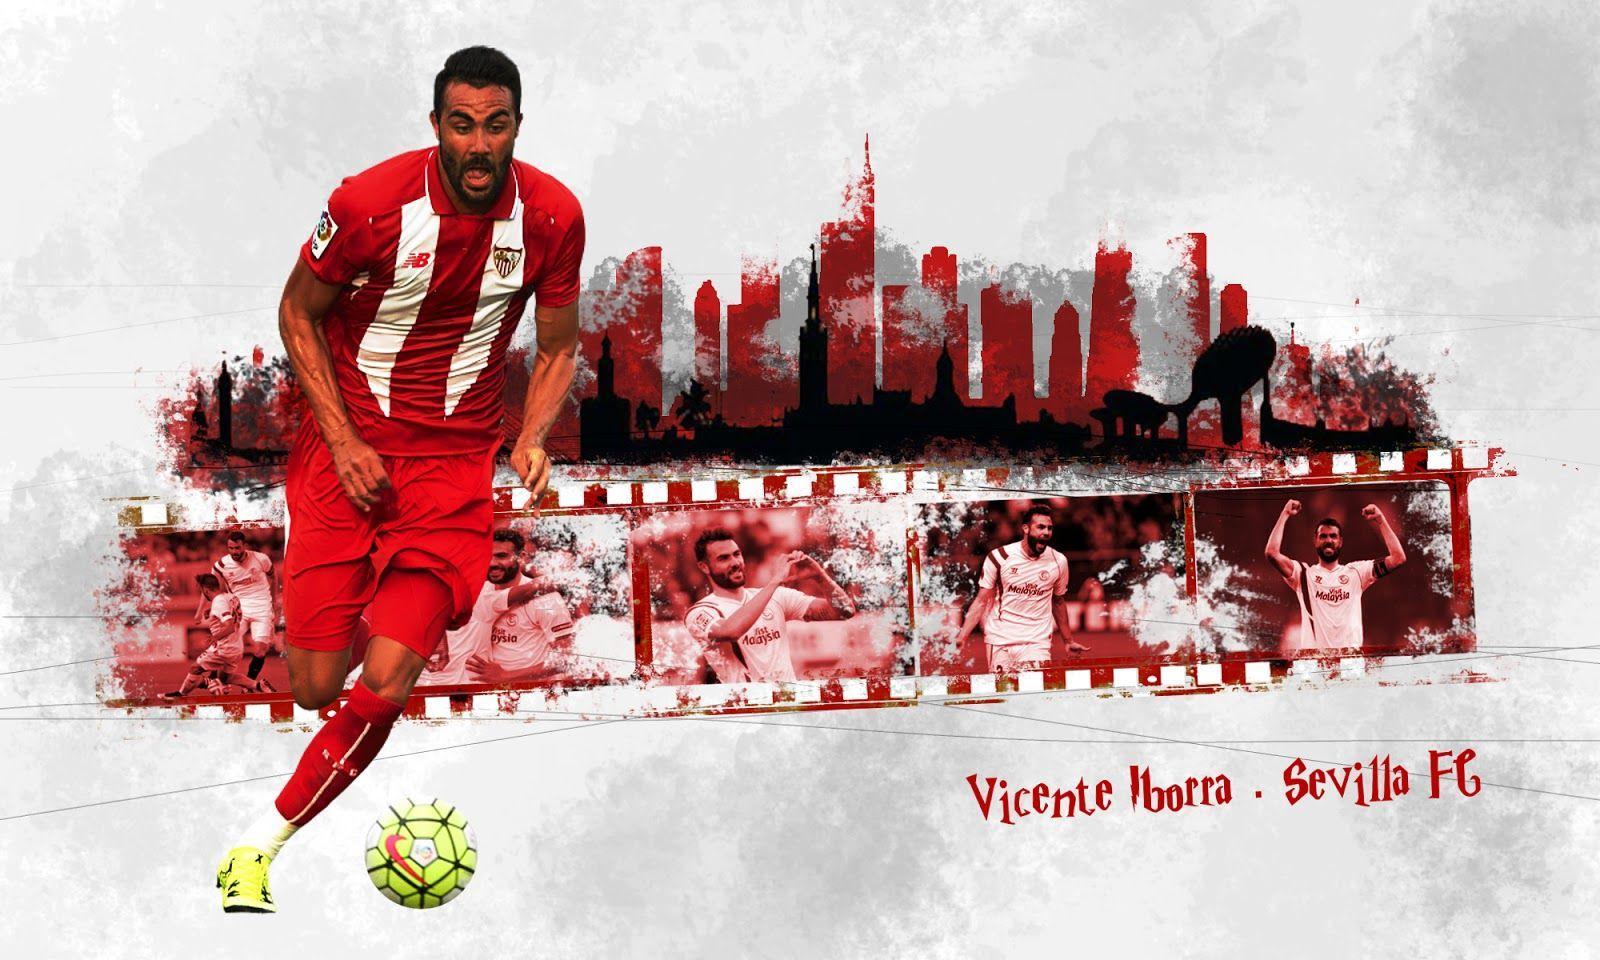 Vicente Iborra. Wallpaper Sevilla FC